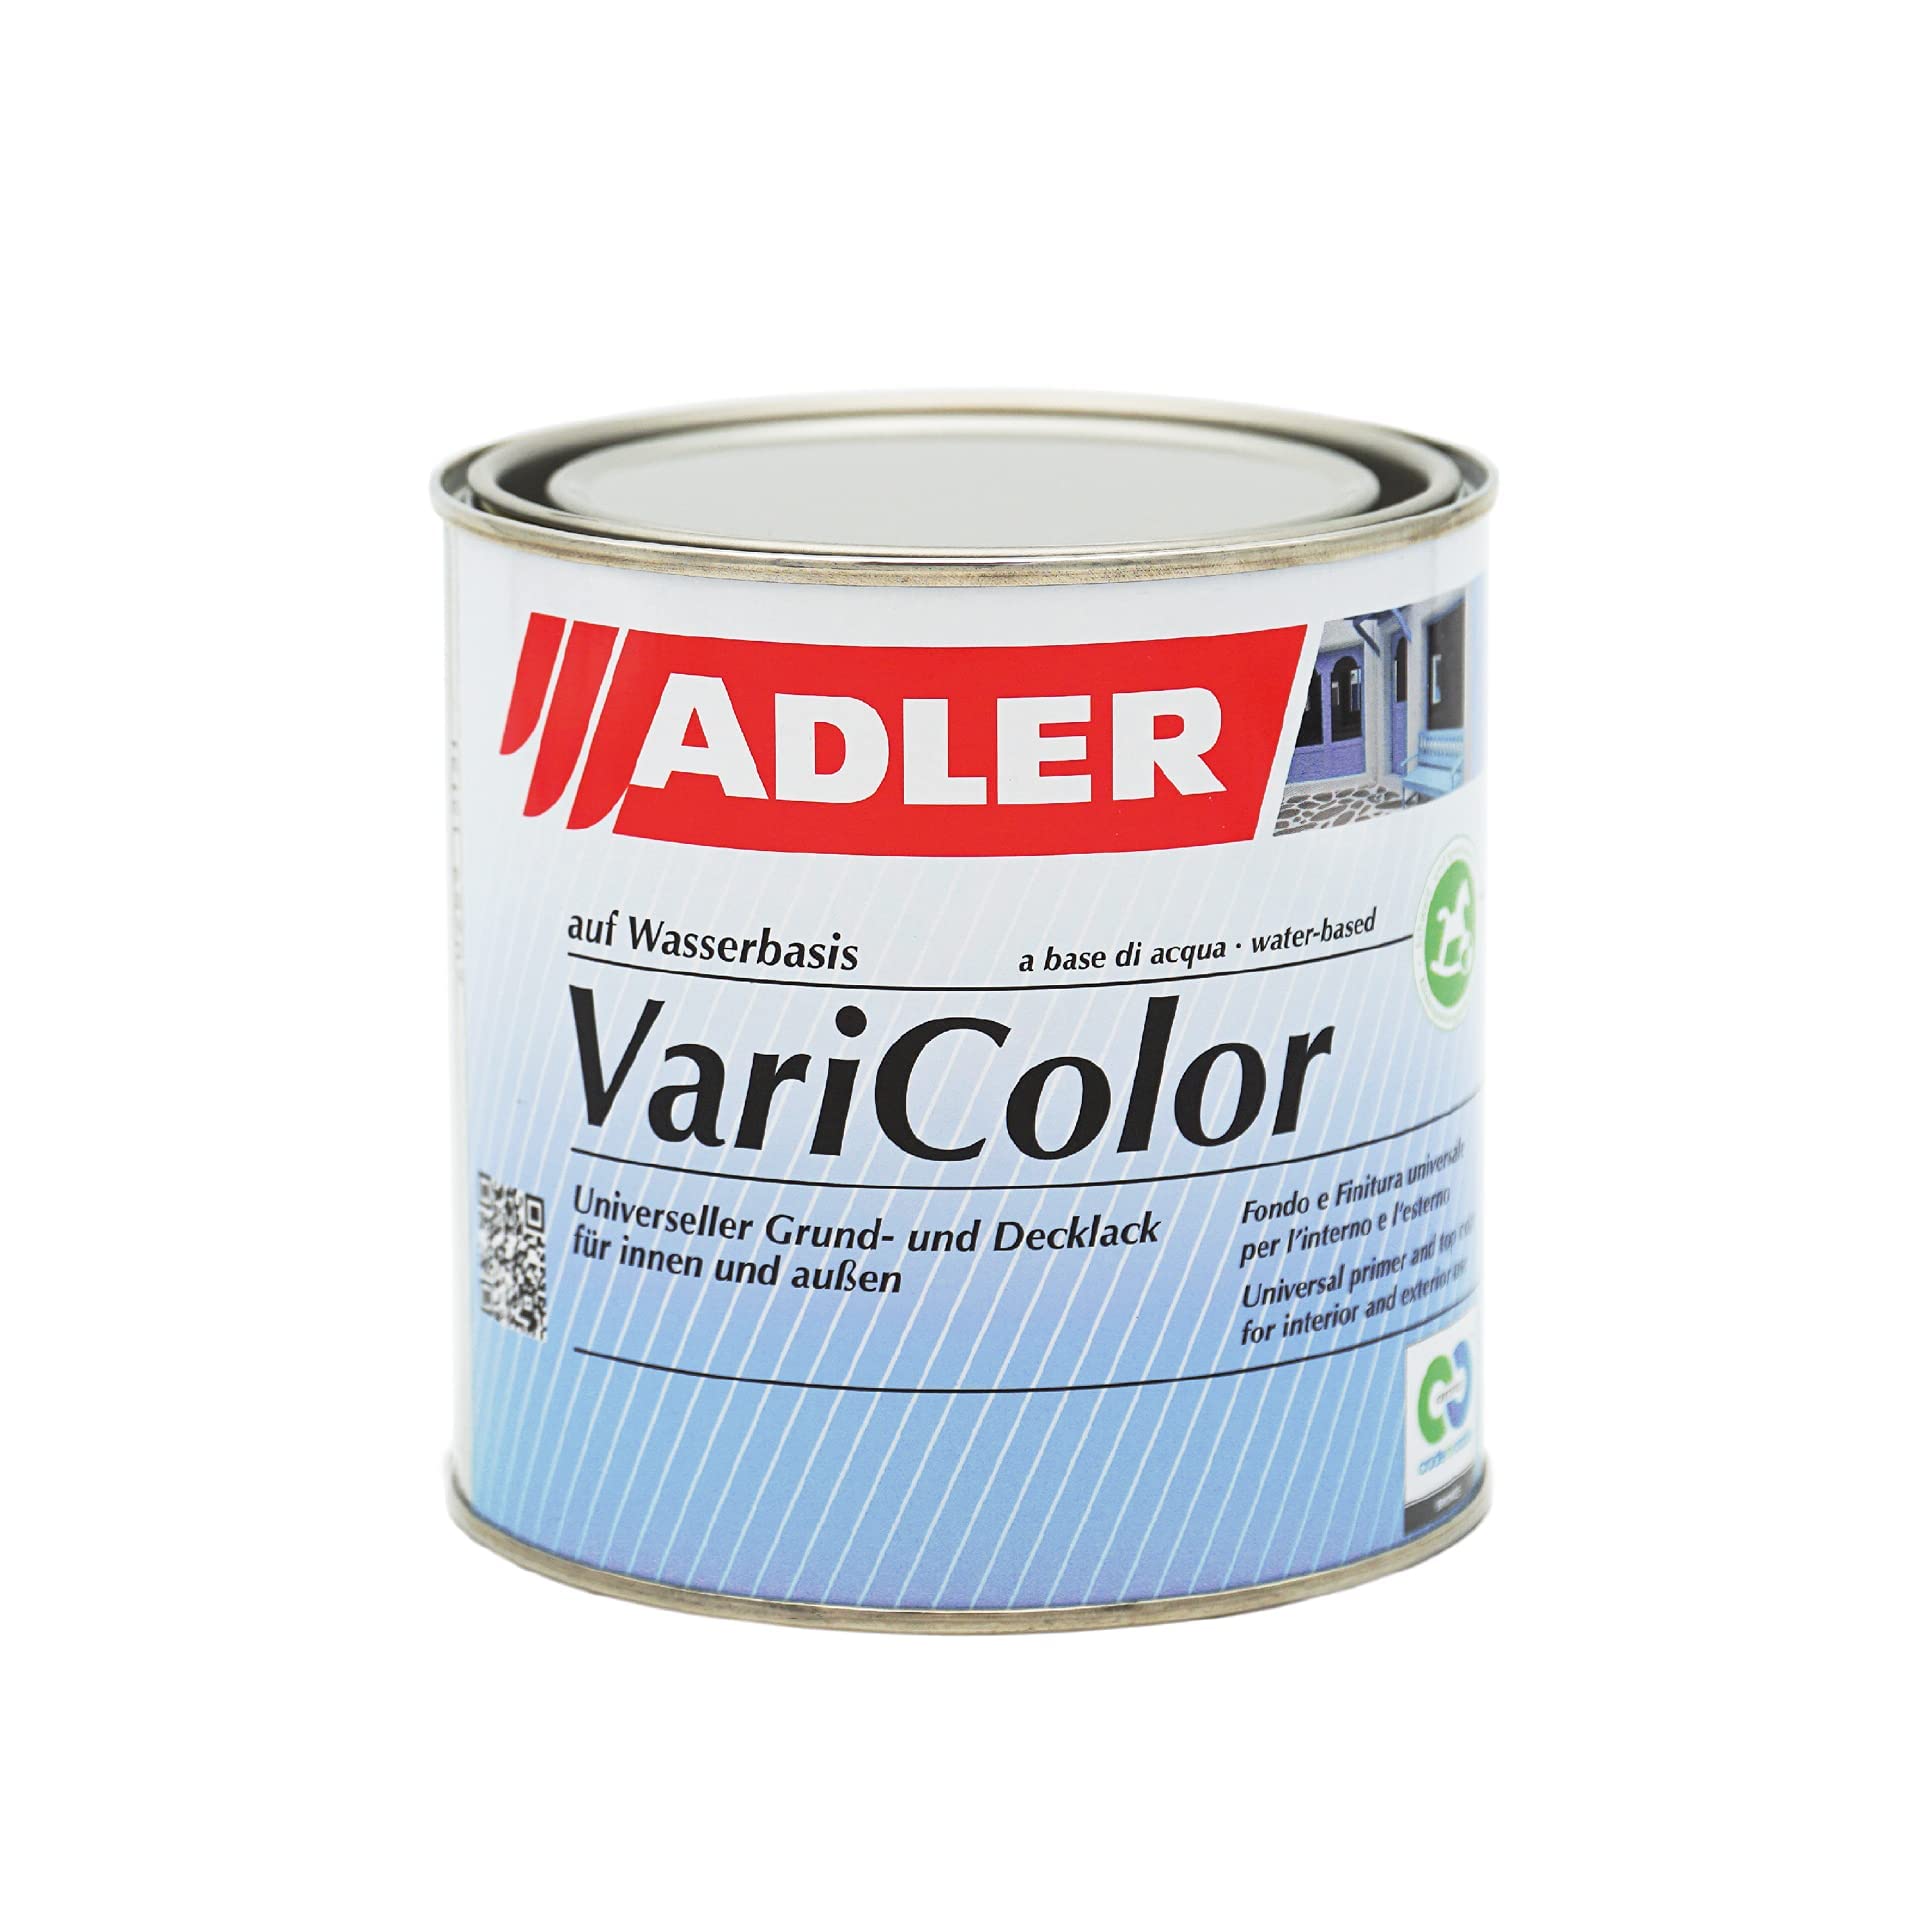 ADLER Varicolor 2in1 Acryl Buntlack für Innen und Außen - 750 ml RAL3003 Rubinrot Rot - Wetterfester Lack und Grundierung - matt